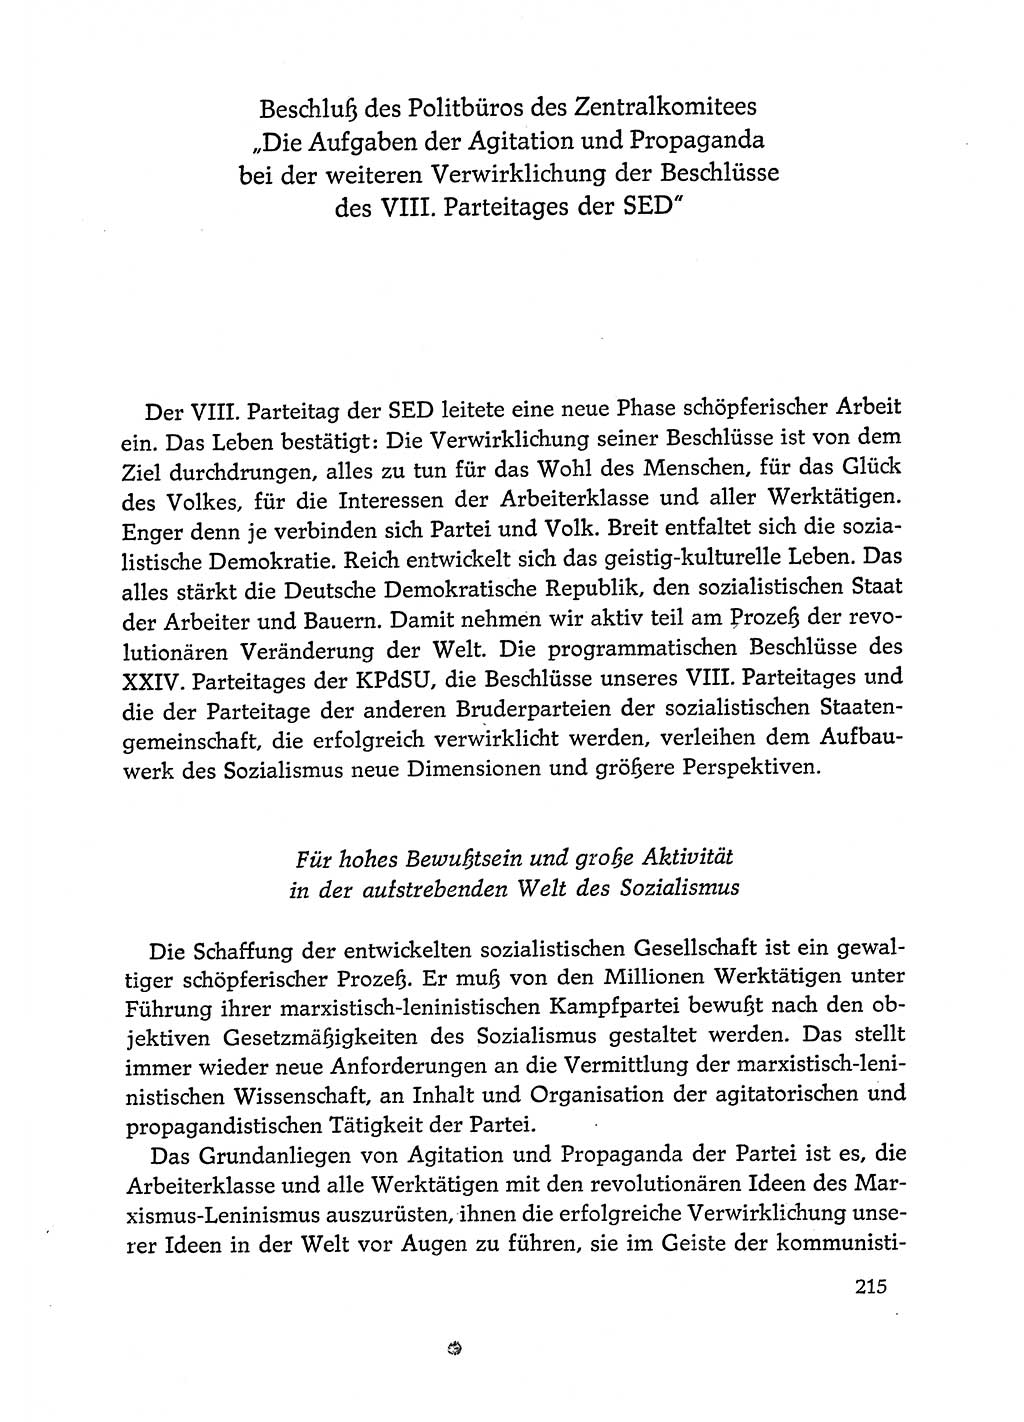 Dokumente der Sozialistischen Einheitspartei Deutschlands (SED) [Deutsche Demokratische Republik (DDR)] 1972-1973, Seite 215 (Dok. SED DDR 1972-1973, S. 215)